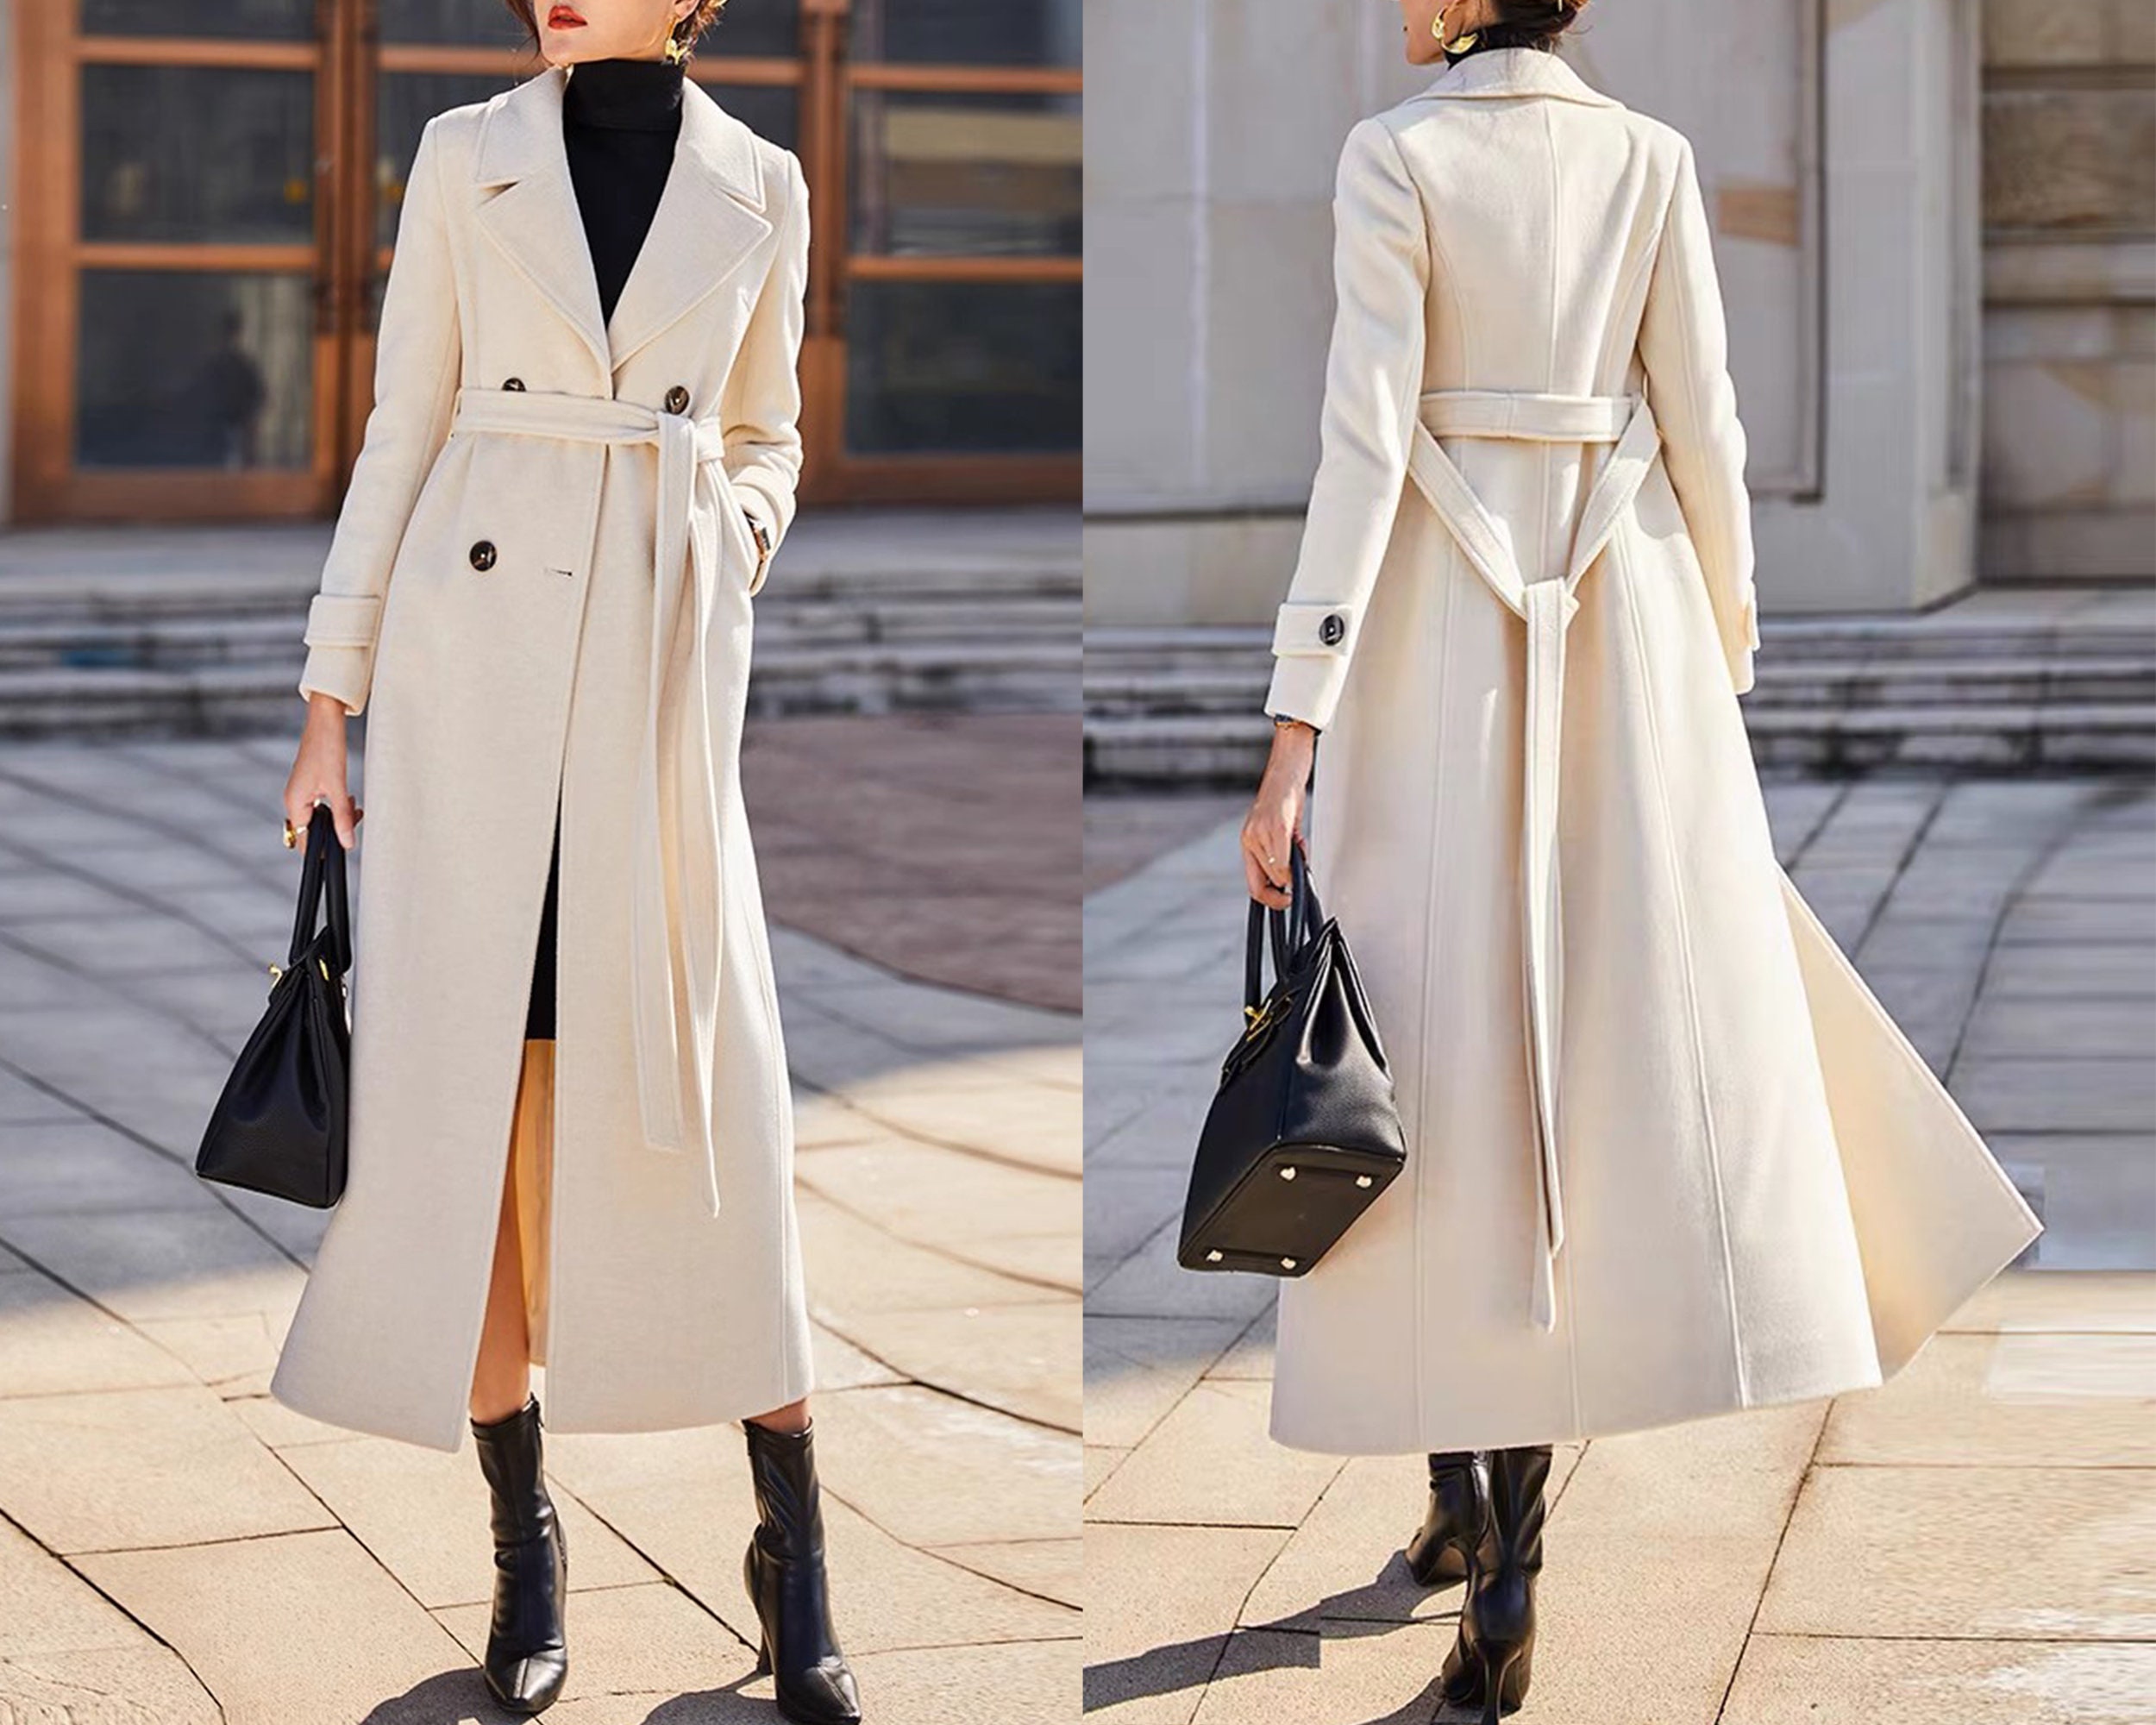 Abrigo largo de lana blanca, abrigo de lana ajustado, abrigo de